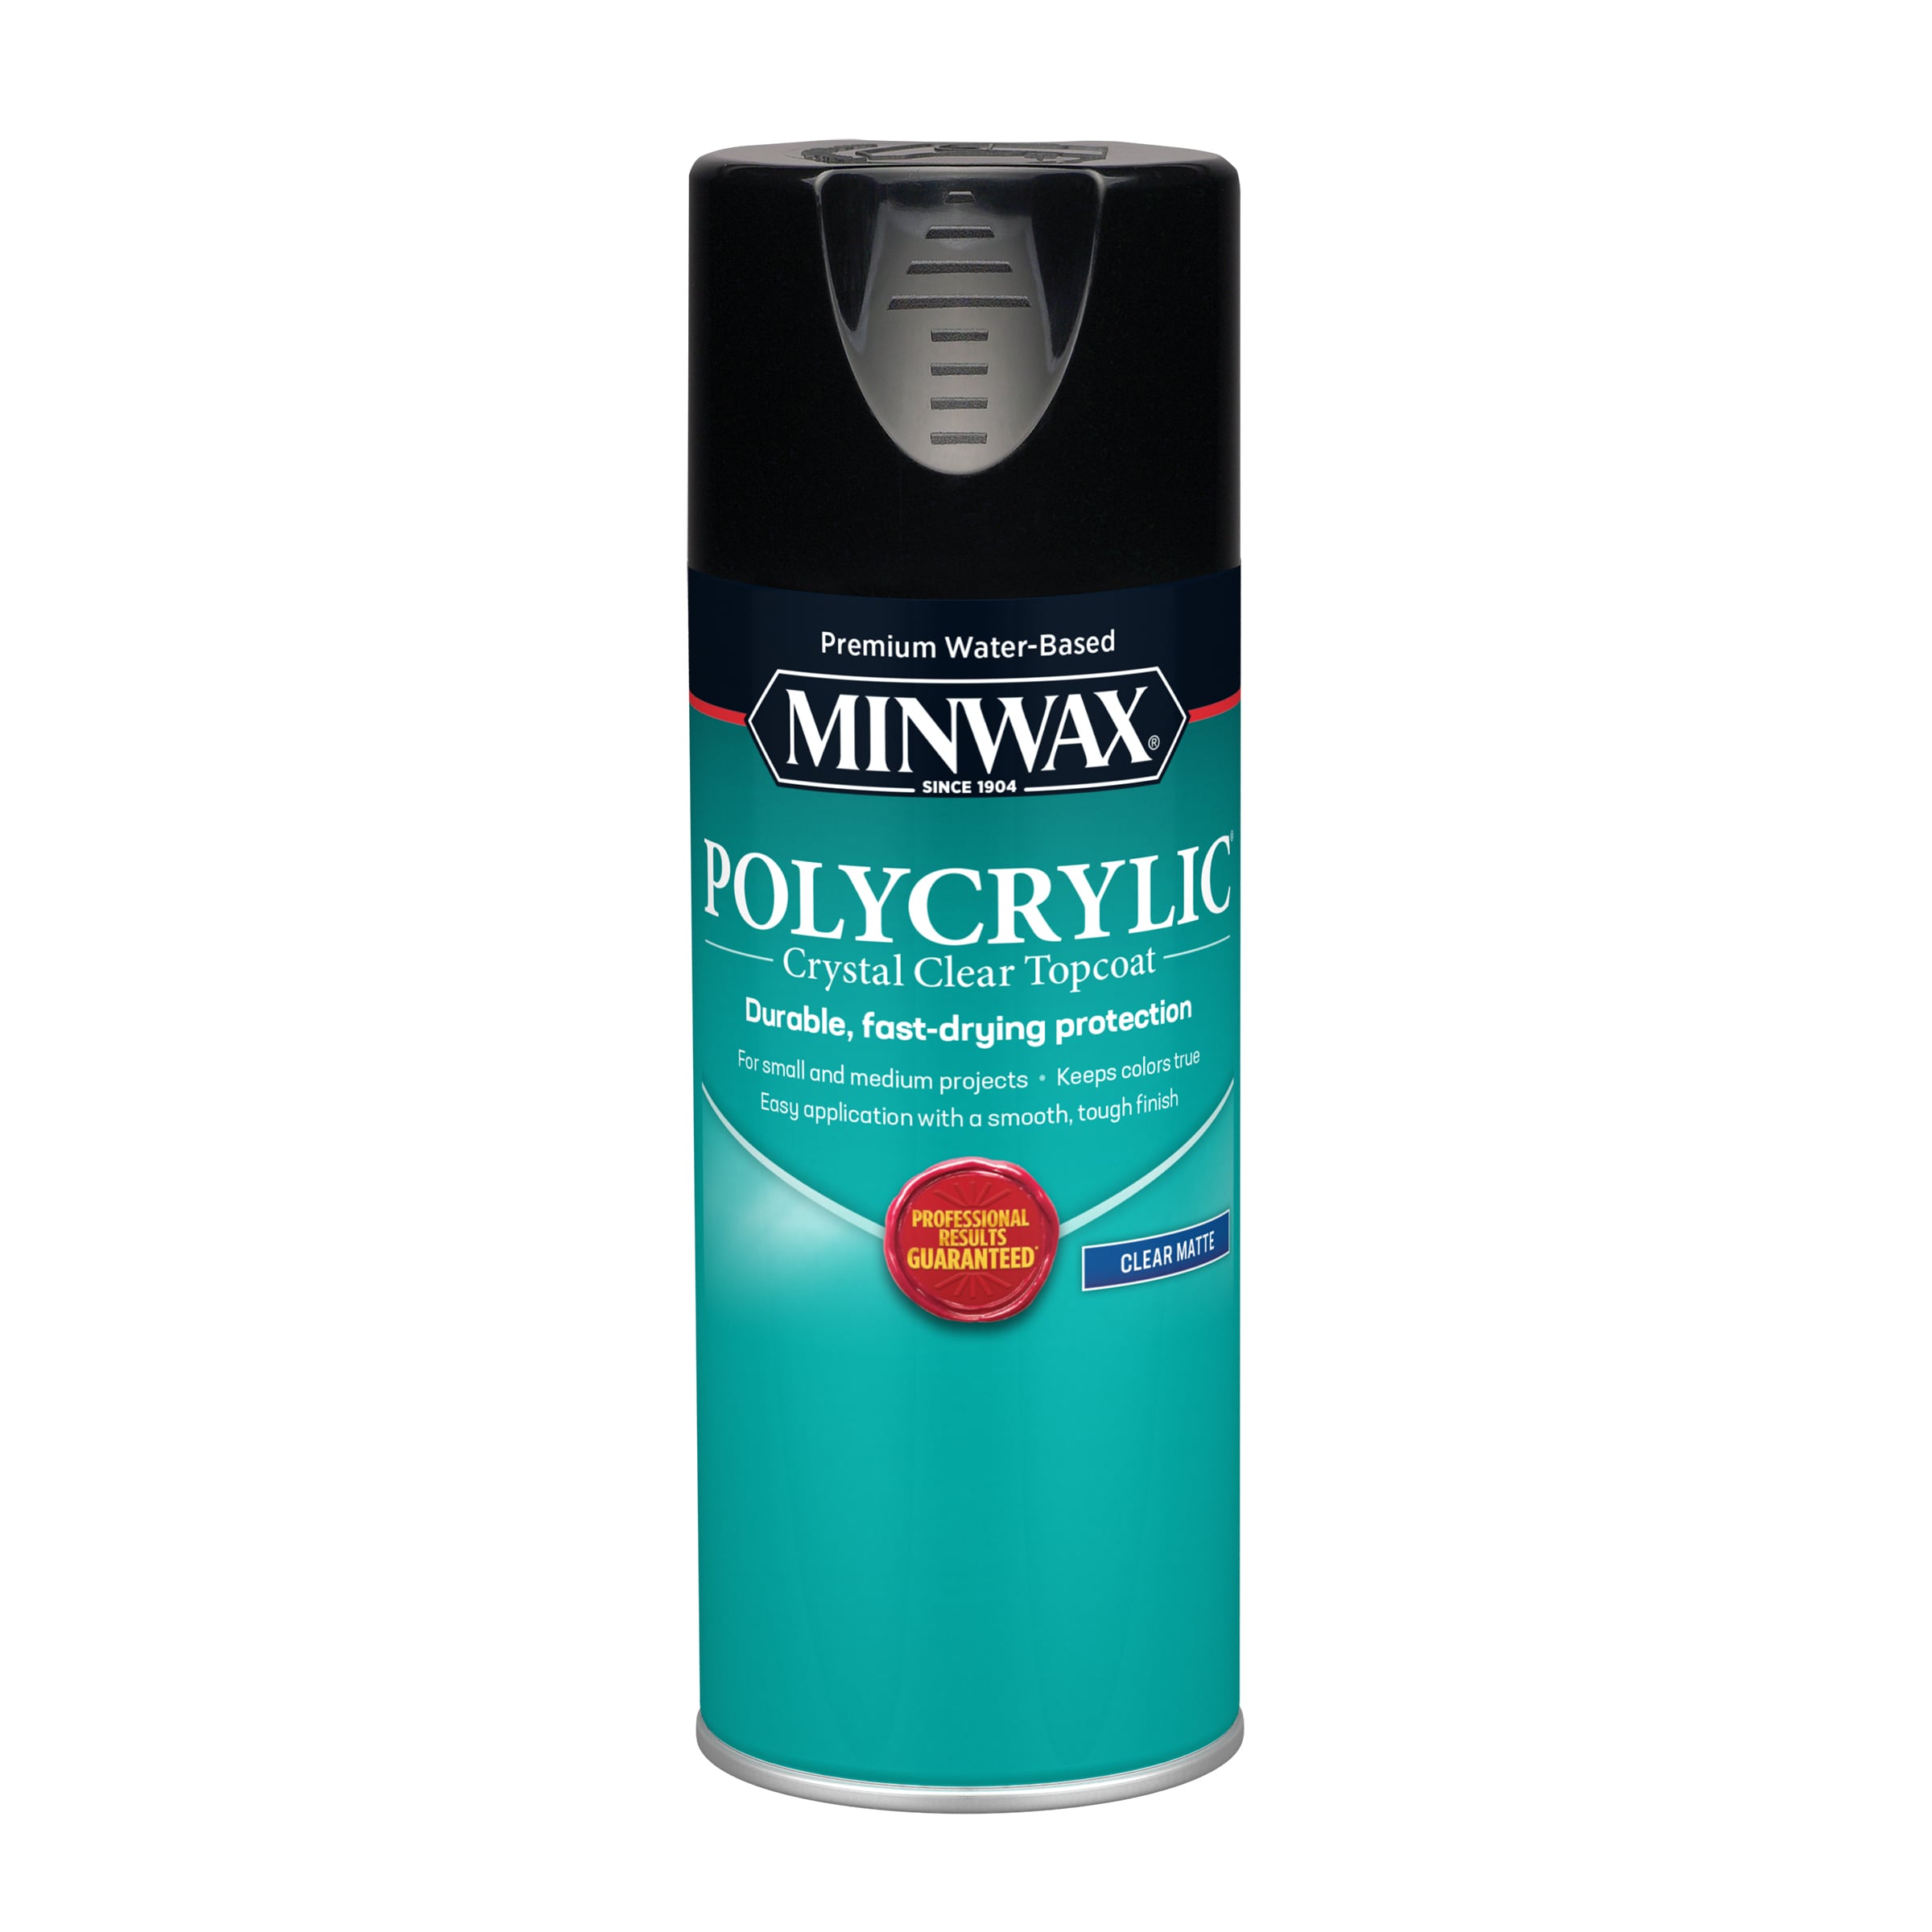 How to Use a HVLP Sprayer to Apply Polycrylic Like a Pro